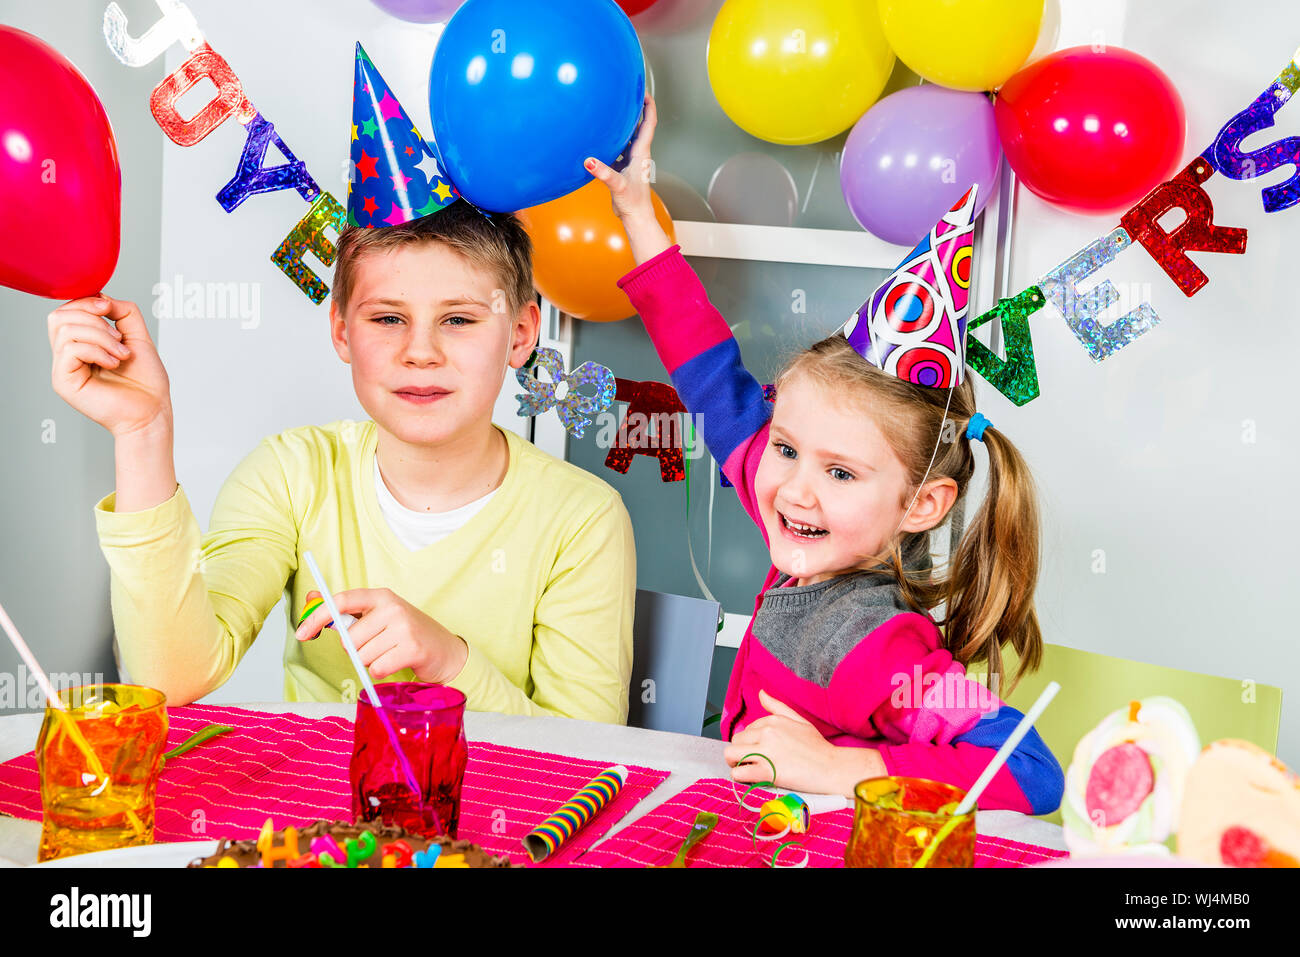 Heureux les petits enfants s'amusent dans une soirée d'anniversaire Banque D'Images